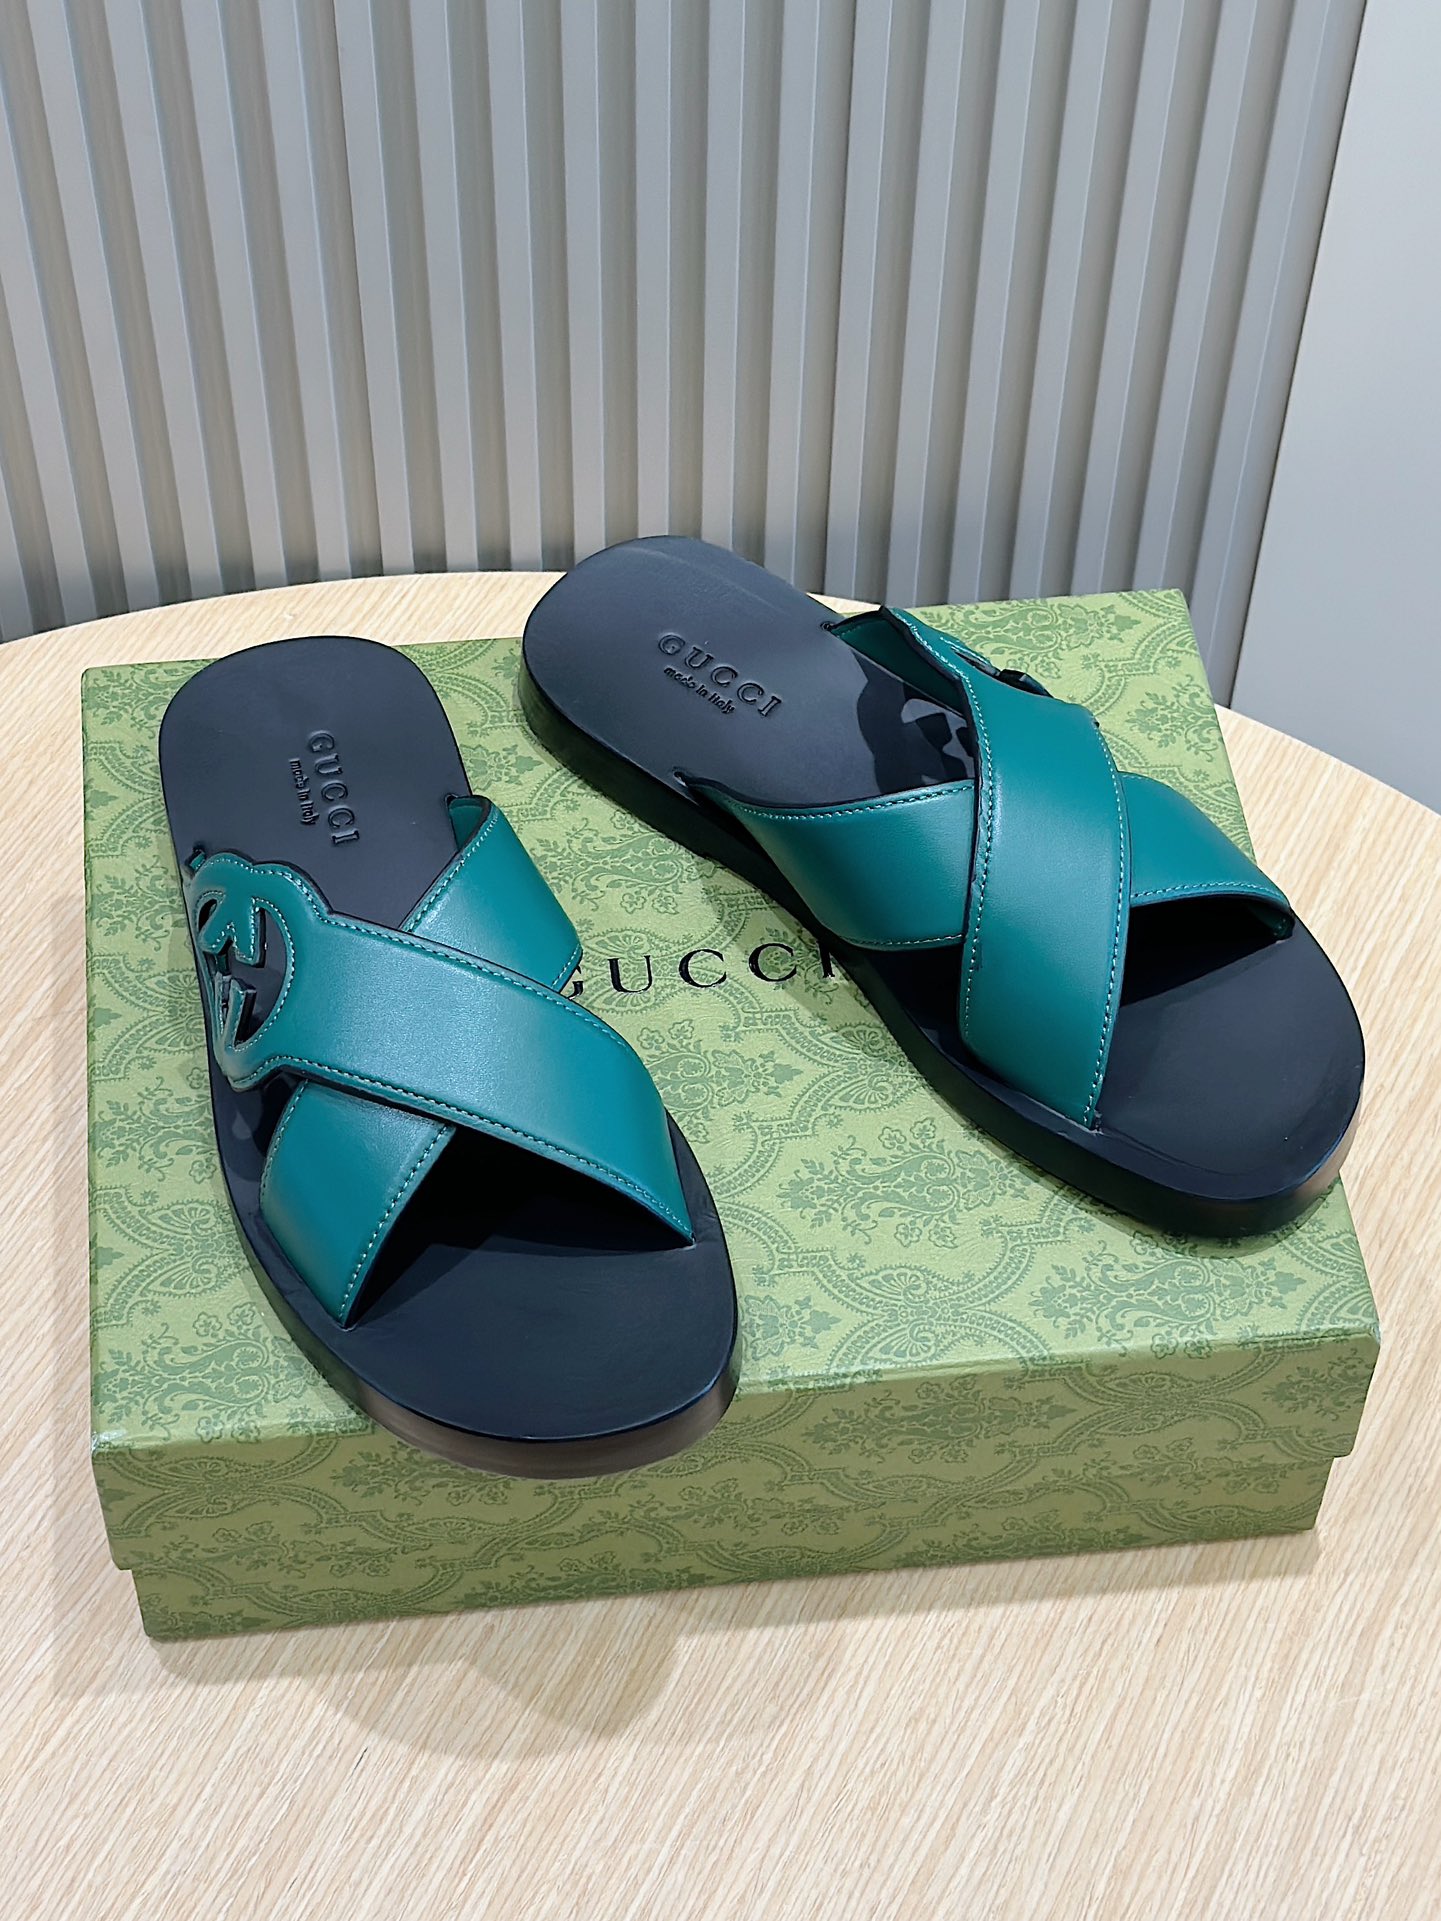 Gucci Scarpe Pantofole Acquista la migliore replica di alta qualità
 Nero Openwork Uomini Pelle bovina Cuoio genuino